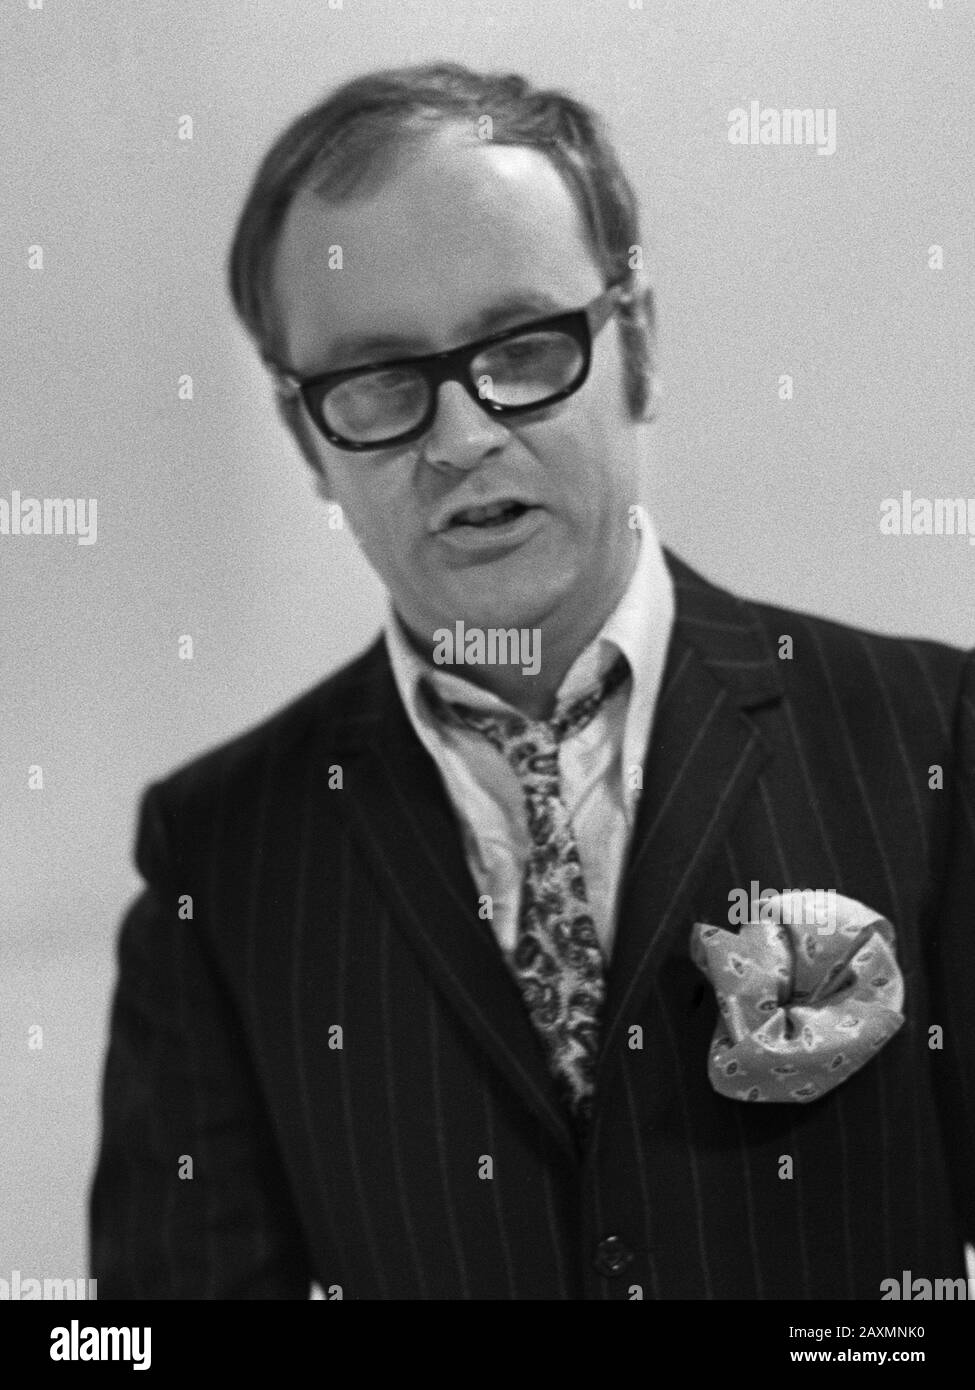 Joost den Turner, presentador del programa de televisión Moef Go Go Go 23 de enero de 1968 Foto de stock